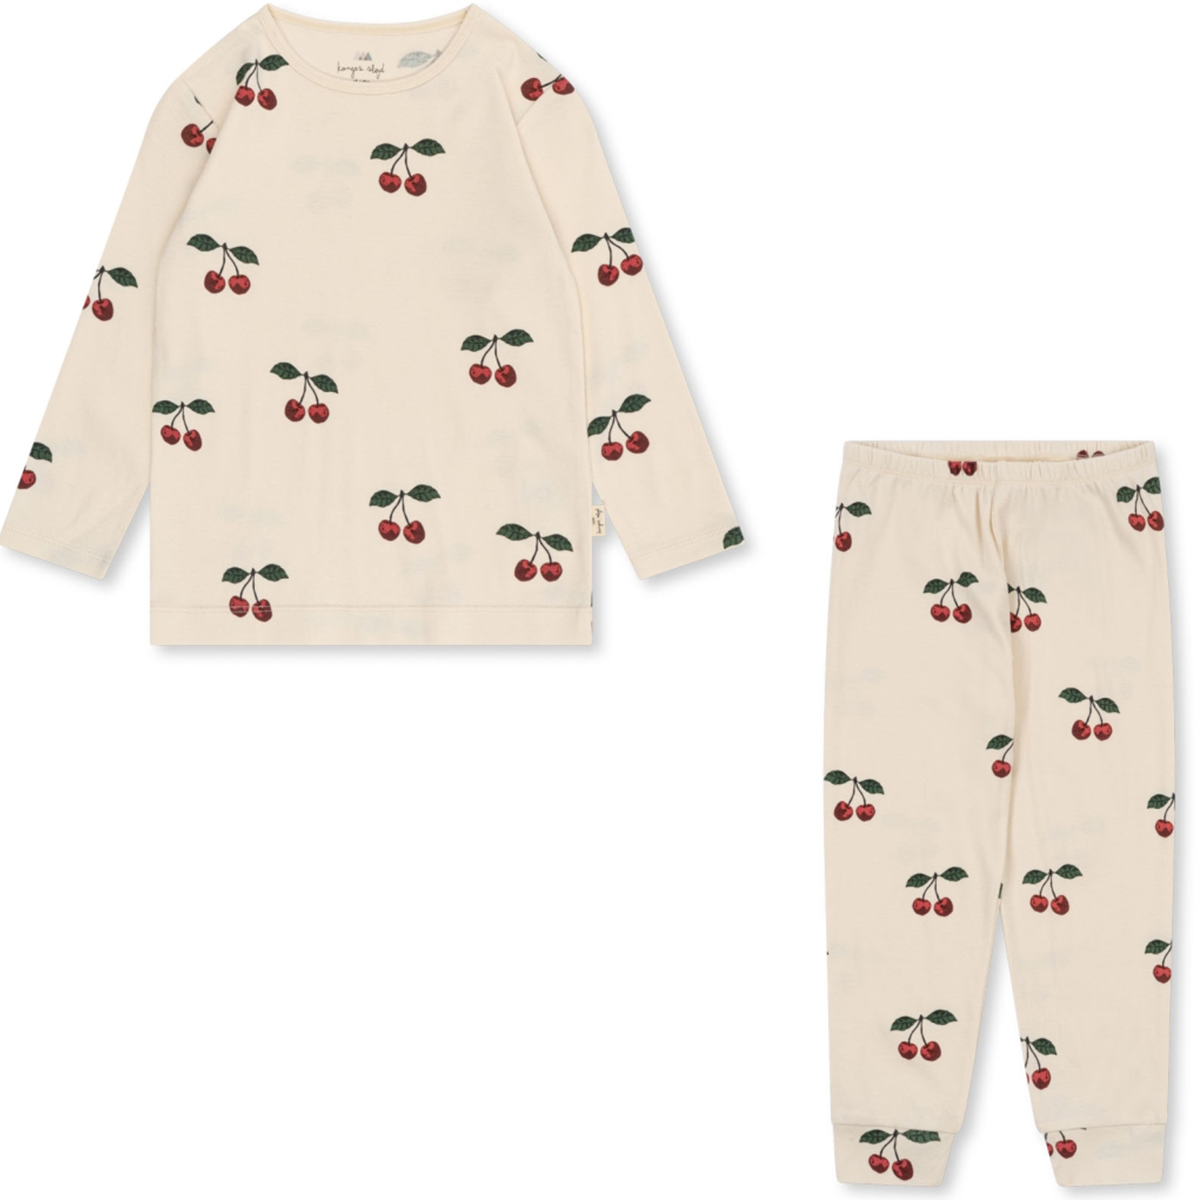 Deze heerlijke sleepy pyjama van Konges Slojd ma grande cerise is een echte must have in de kledingkast van je kleintje. Deze pyjama is namelijk superzacht en zit lekker comfortabel. Én deze pyjama ziet er ook superleuk uit, in de bekende Konges Slojd stijl. VanZus